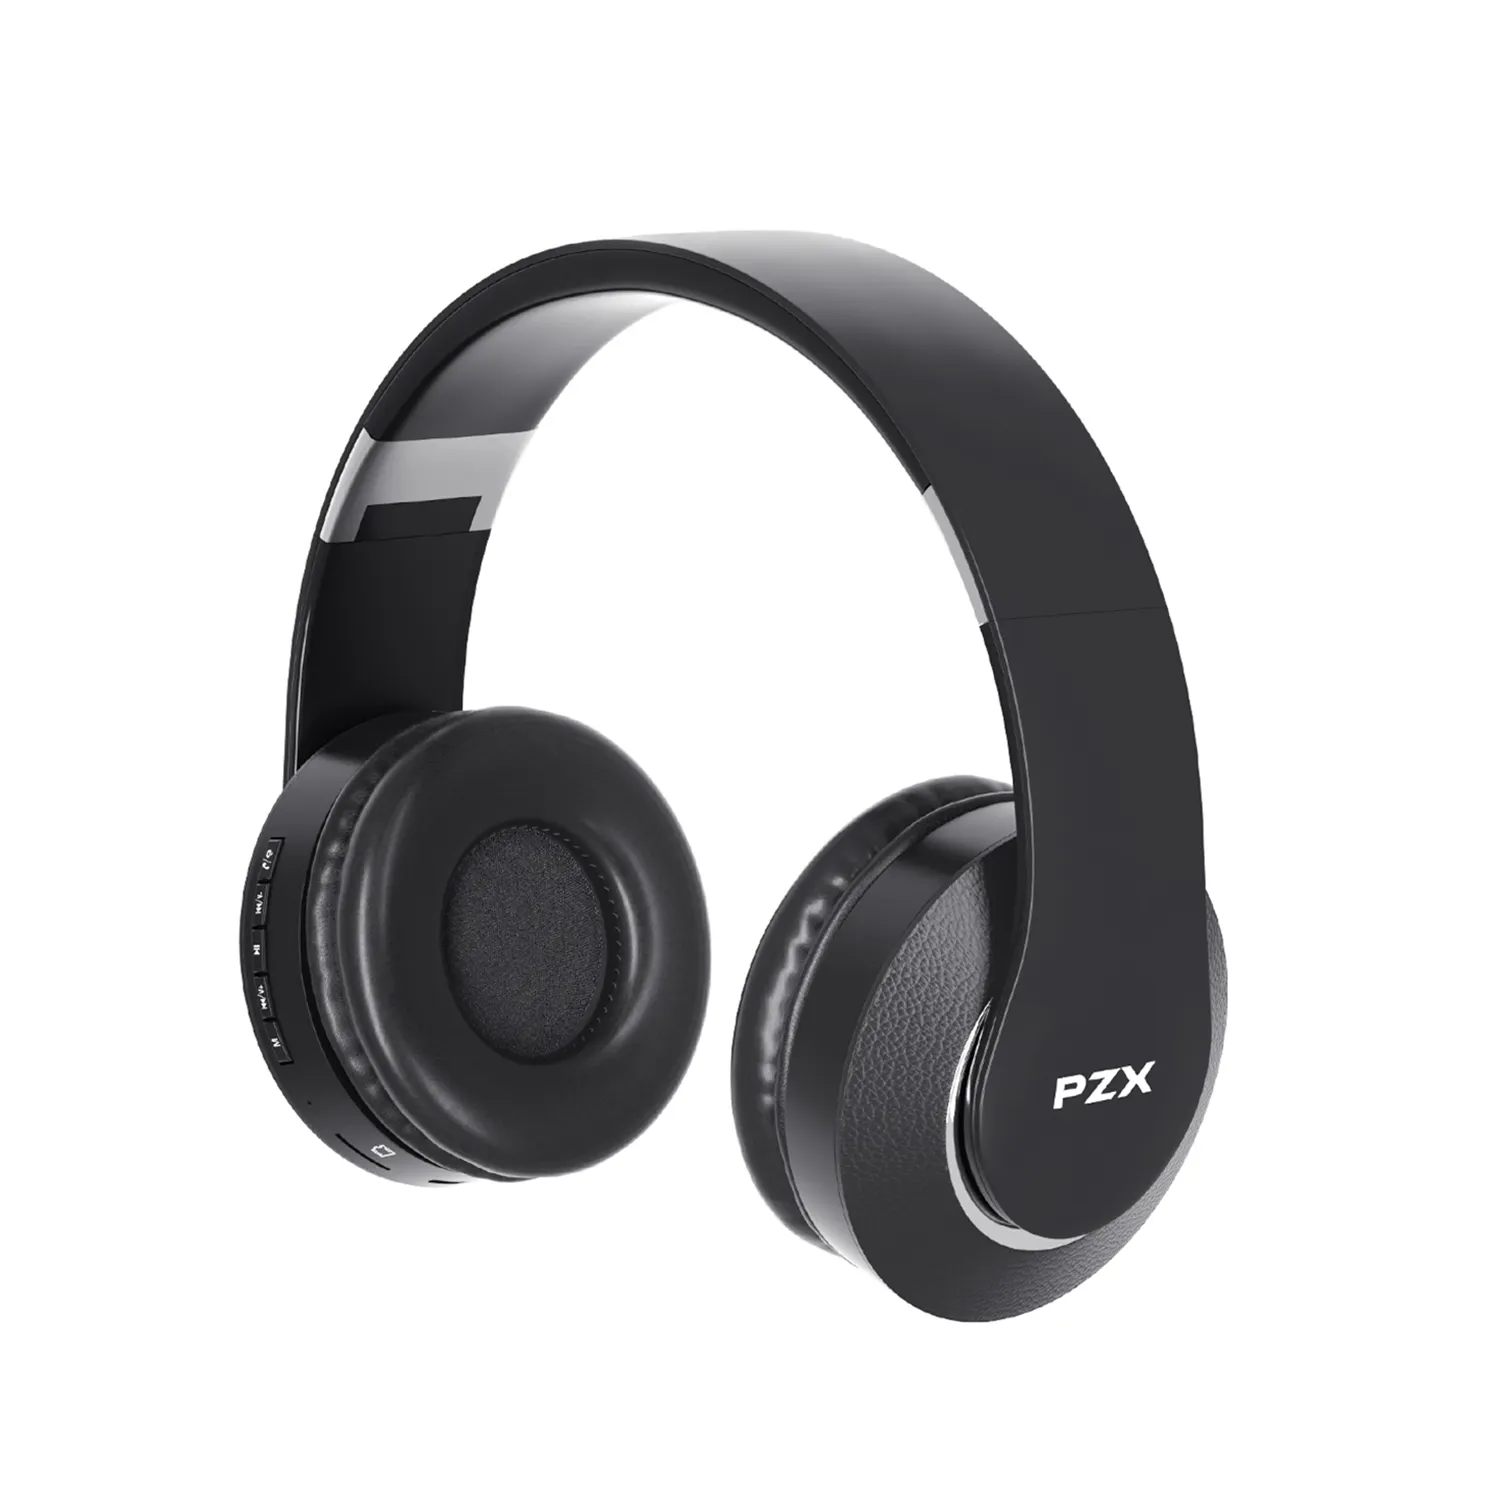 Cuffie bluetooth Wireless di alta qualità PZX cuffie da gioco pieghevoli cablate sopra l'orecchio con microfono incorporato, FM, scheda SD